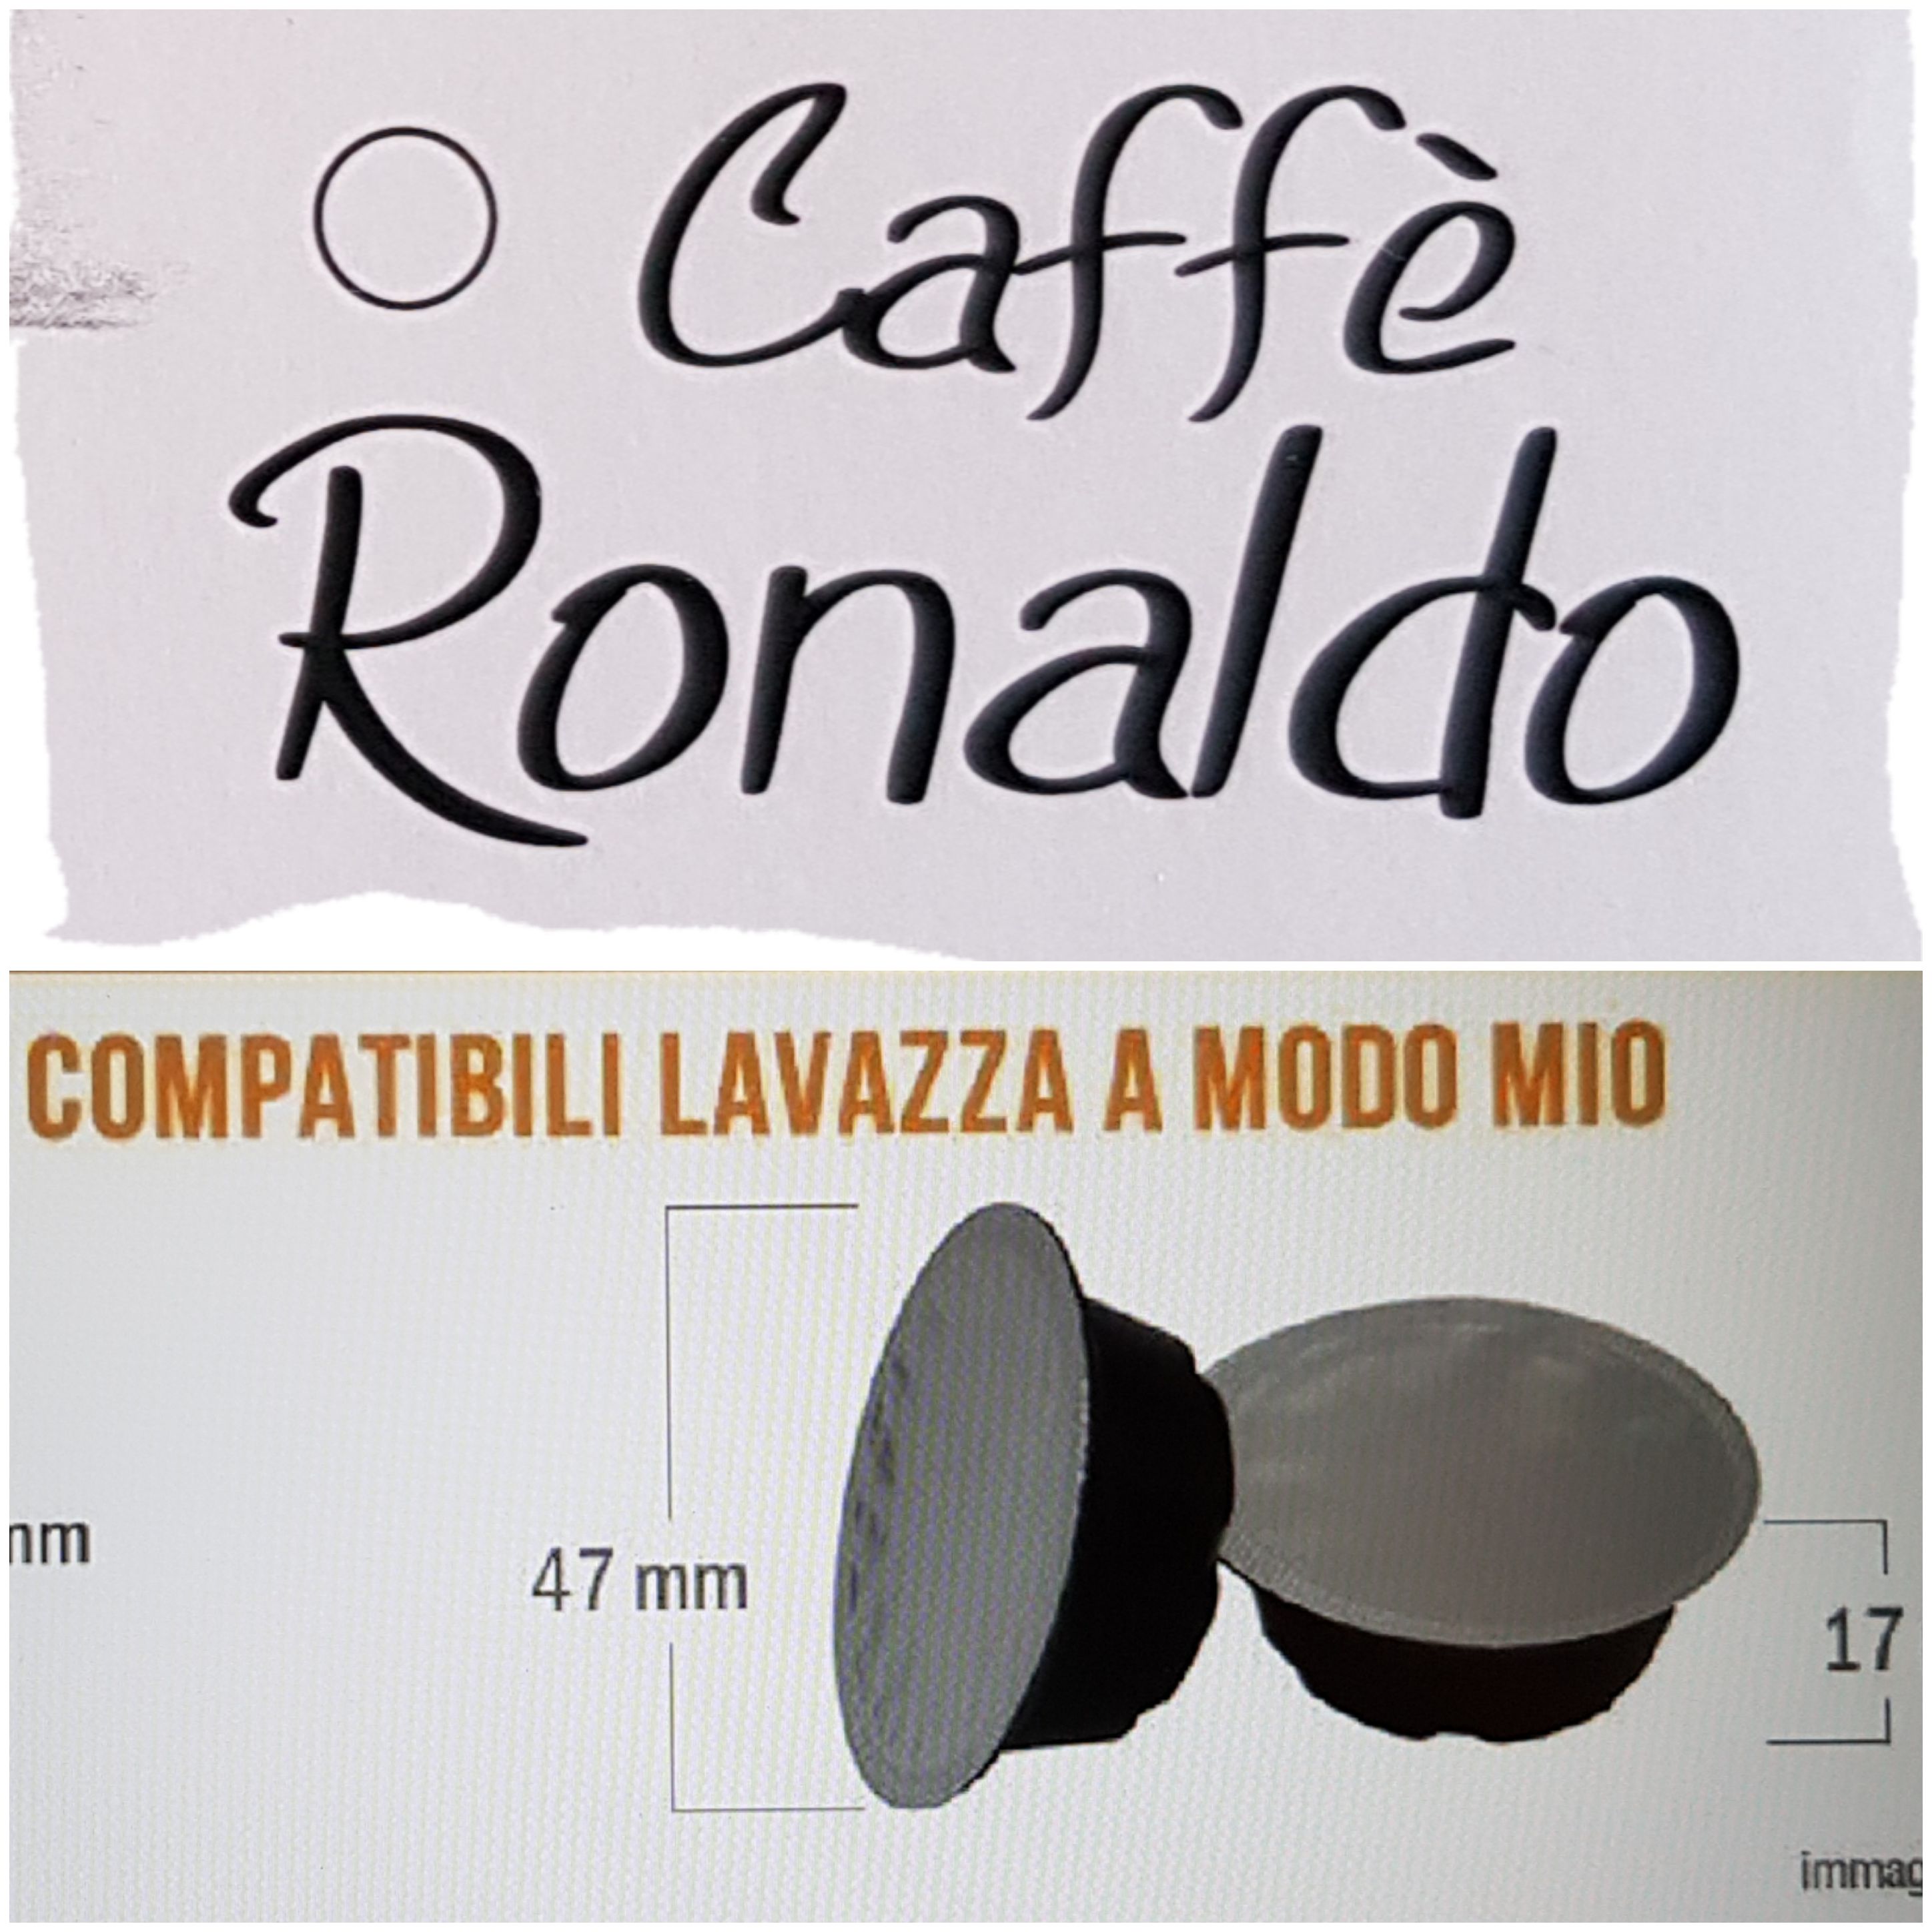 Caffè Ronaldo 100 AMODOMIO Se paghi 2, kit ECO regalo - Sped. o cons. a Palermo incl. - € 0,20 caps